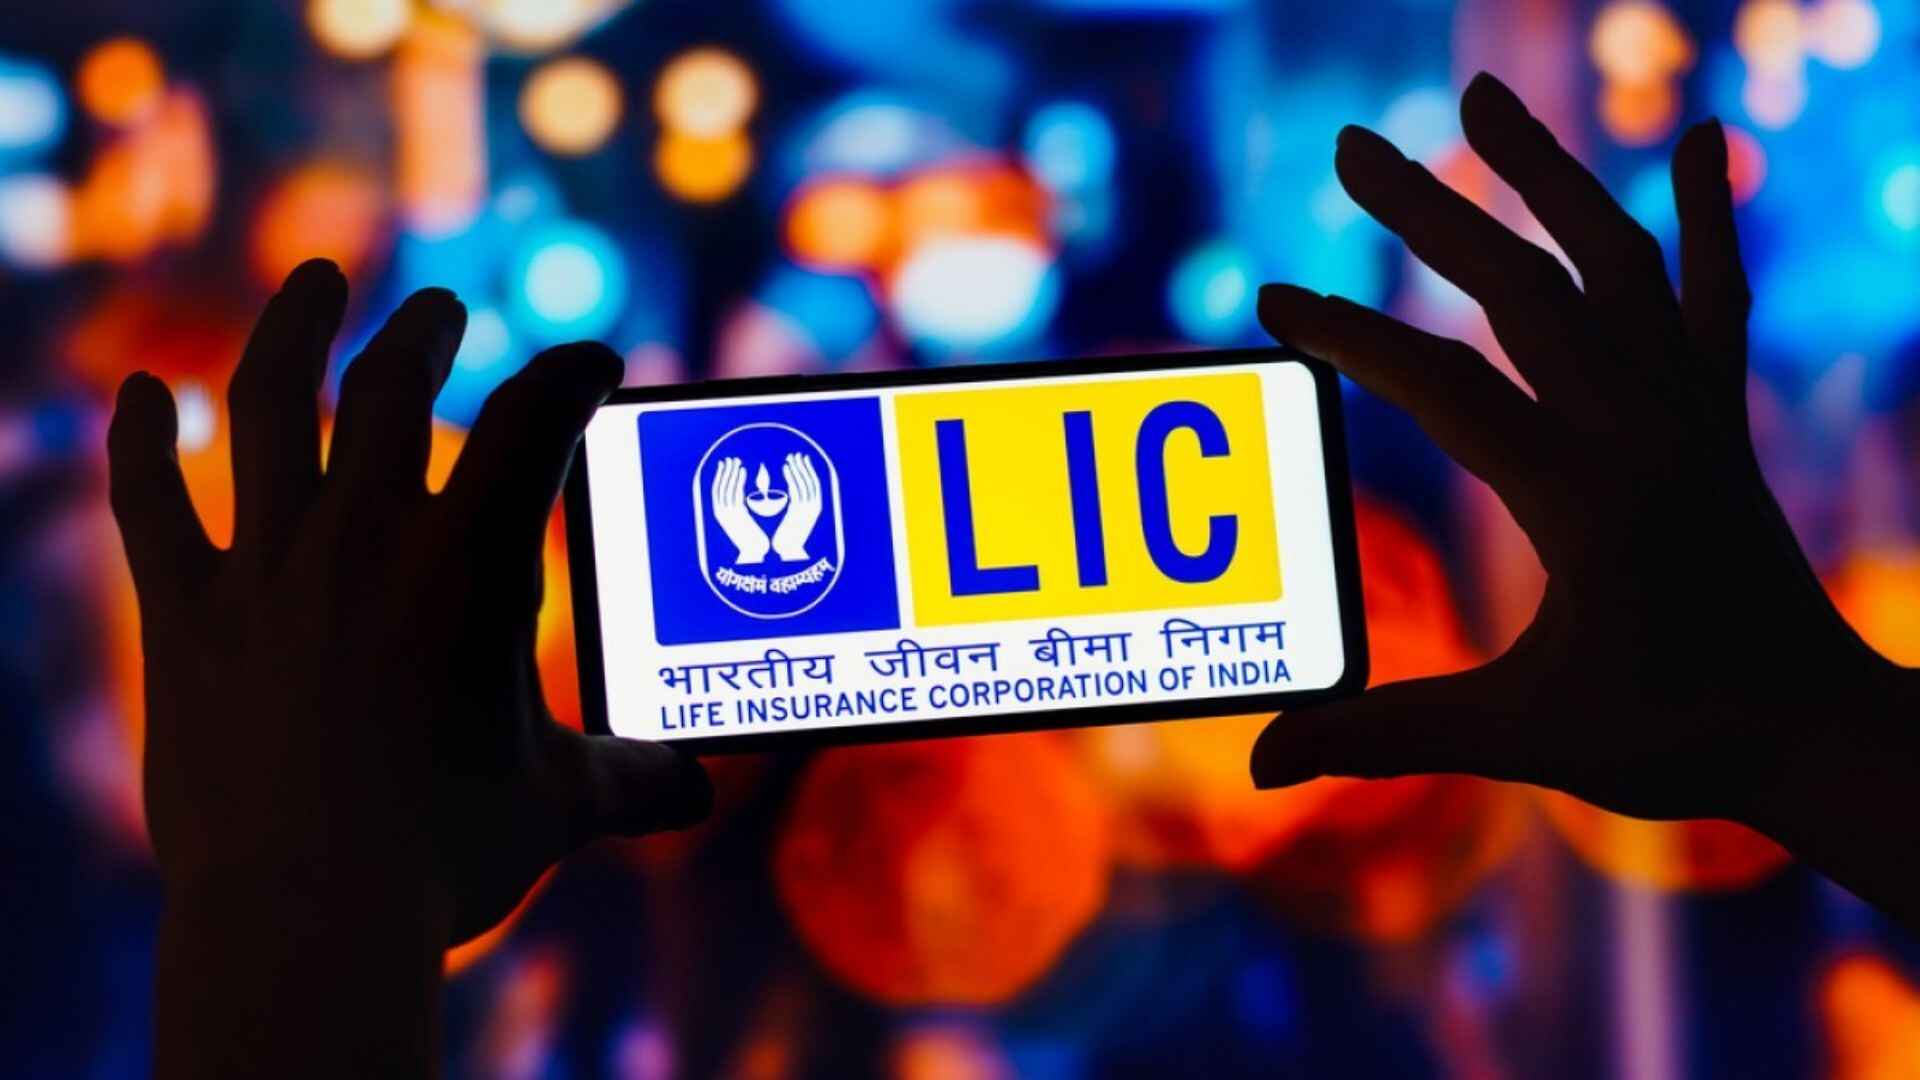 LIC's Digital Revolution: 1 Million Policies Sold Via Ananda App